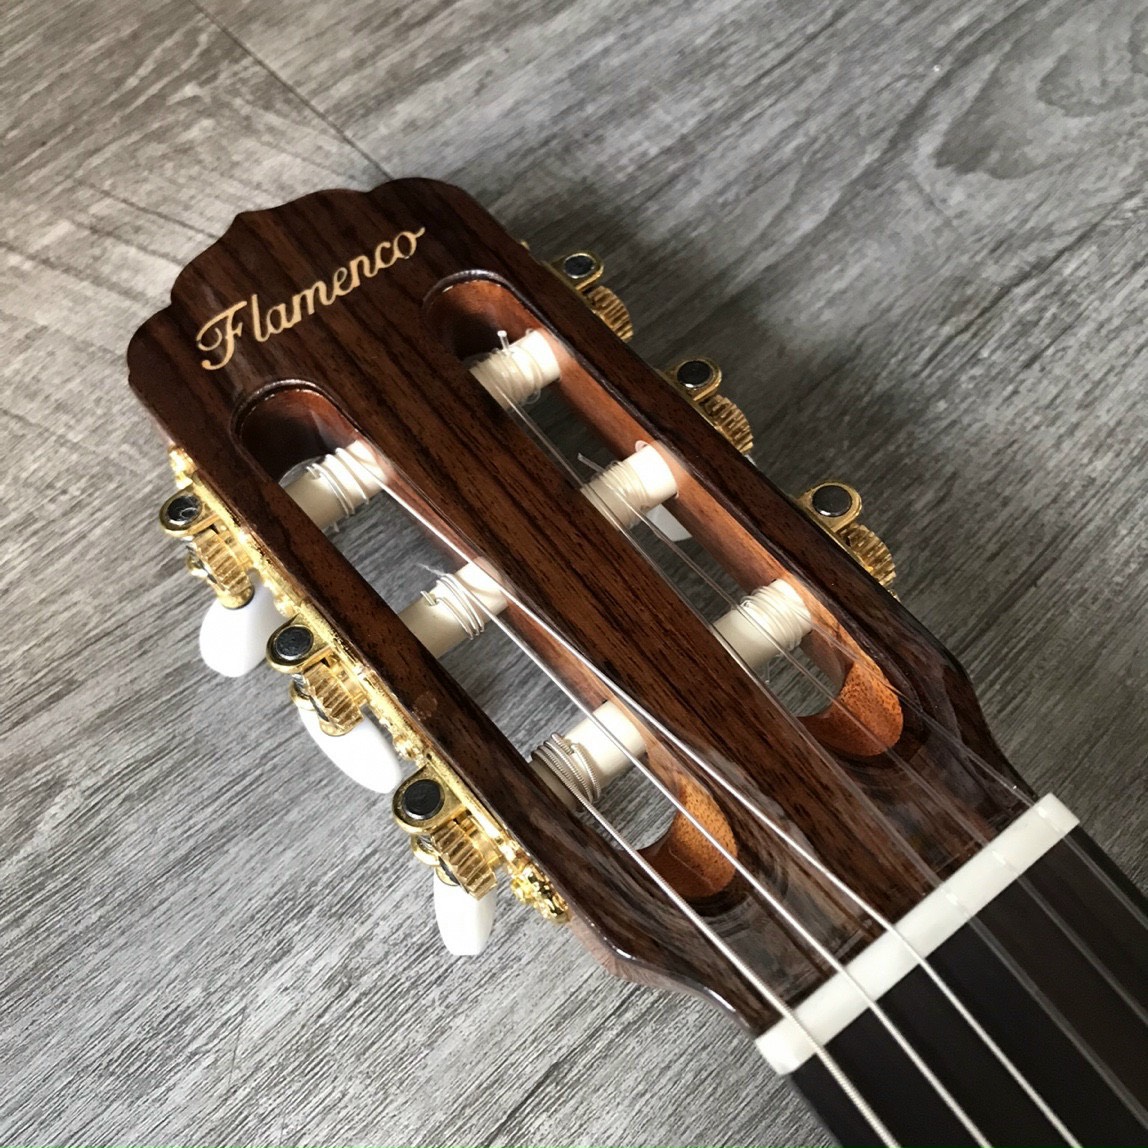 thuong-hieu-dan-guitar-flamenco